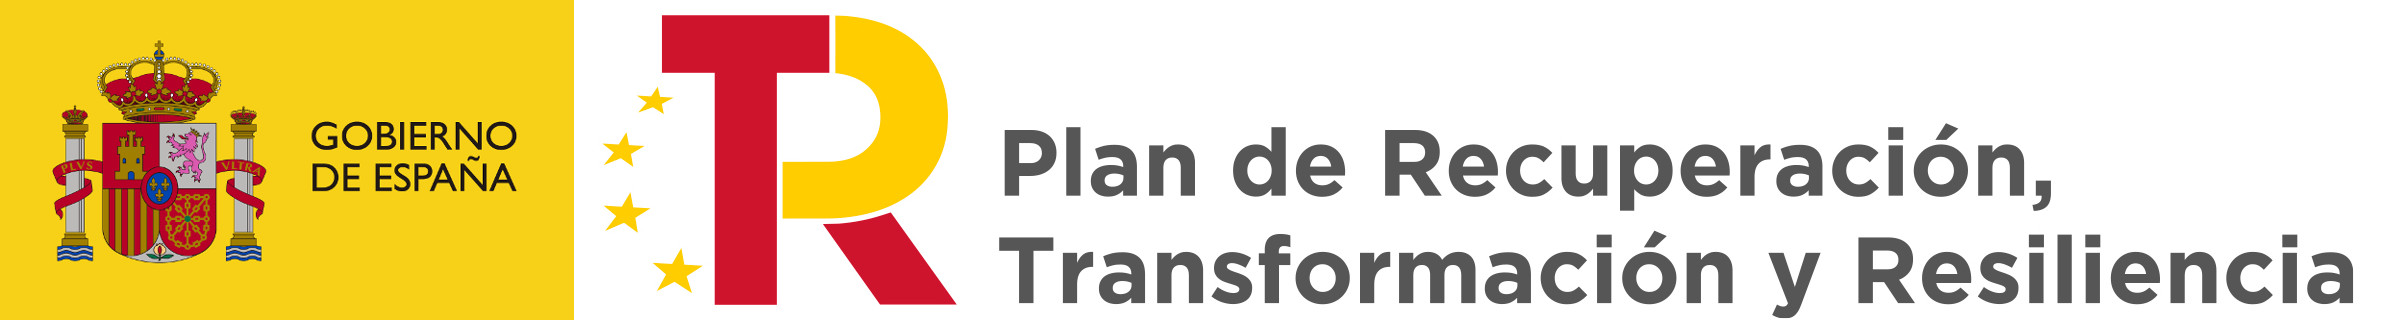 kit digital: Plan de Recuperación, Transformación y Resiliencia